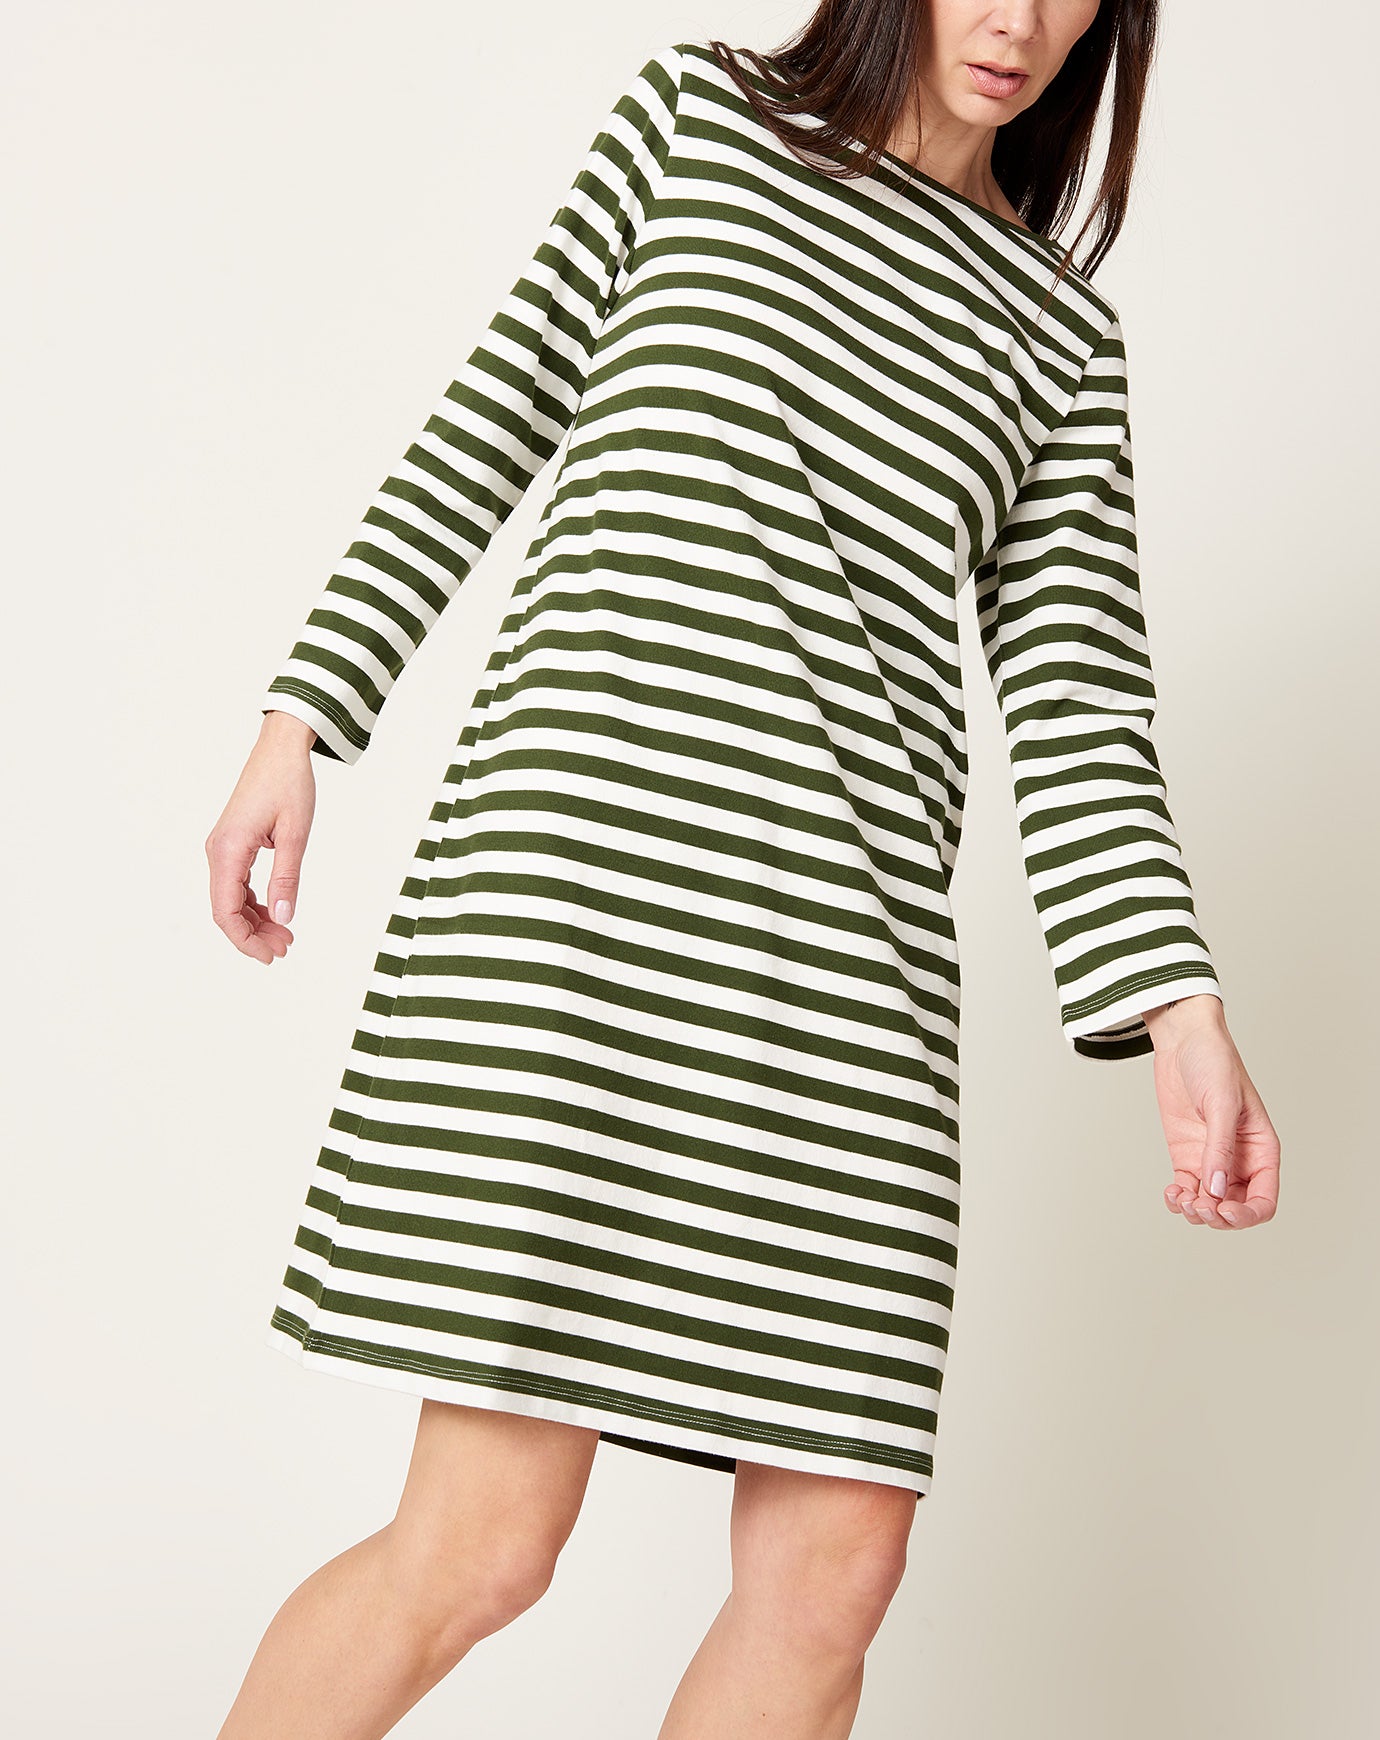 Kowtow Breton Dress in Deep Green Stripe